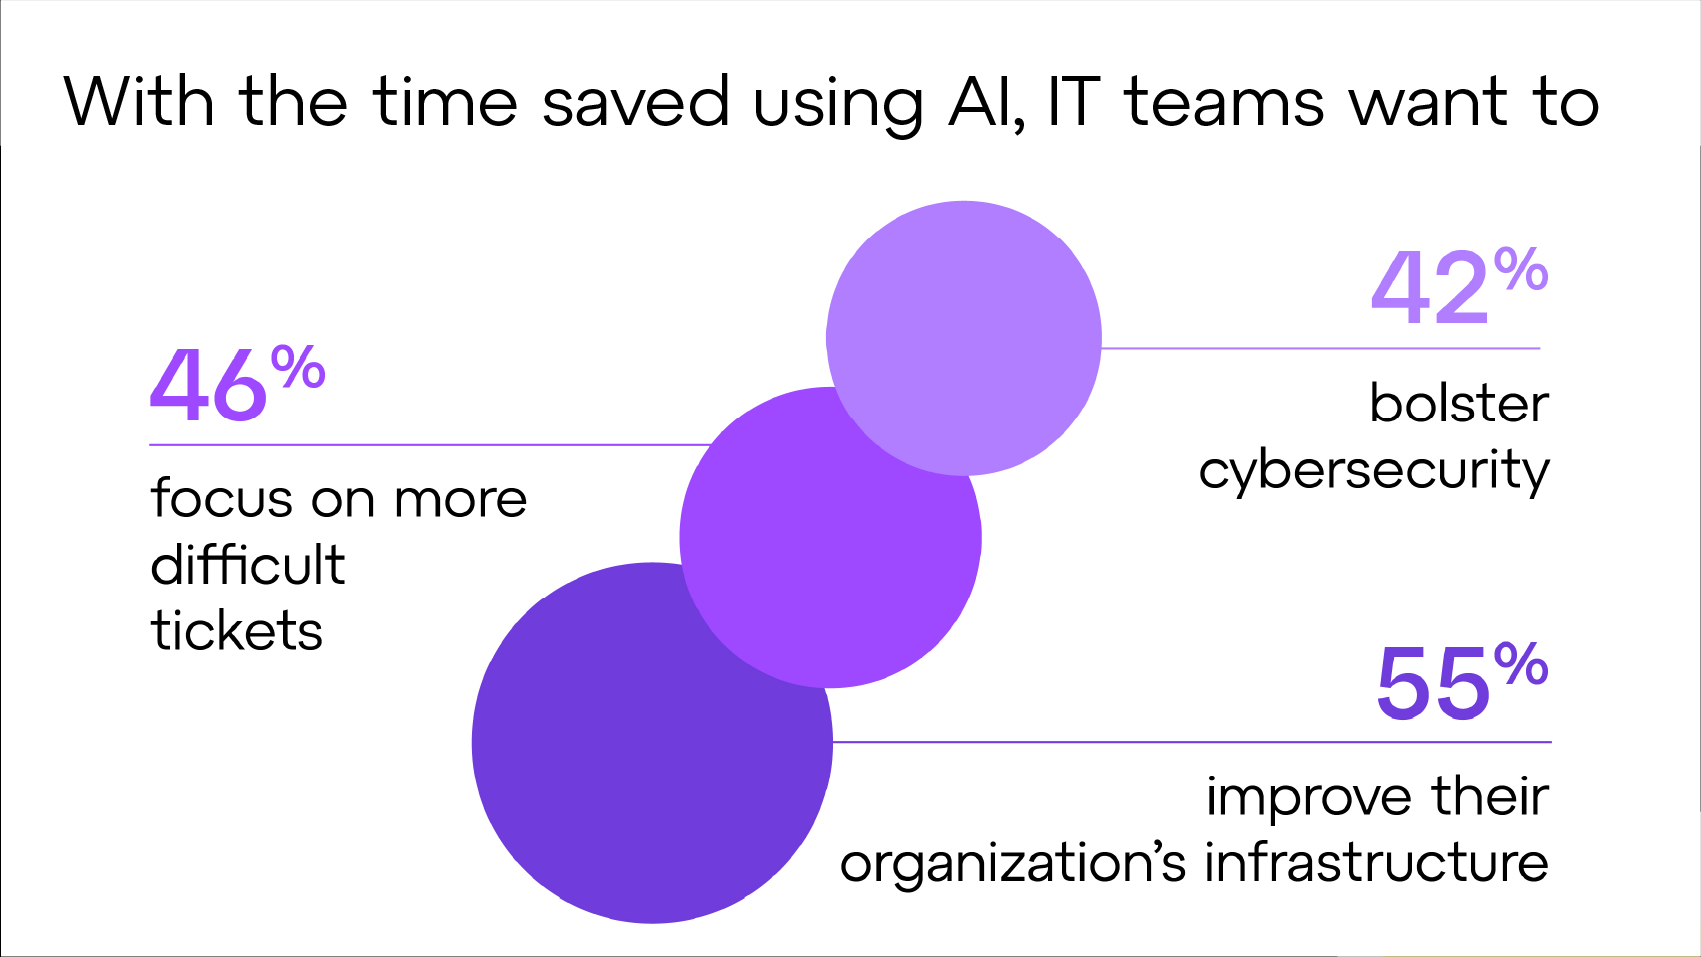 Grâce au temps gagné avec l'IA, les équipes informatiques peuvent se consacrer aux tickets plus difficiles à traiter, au renforcement de la cybersécurité et à l'amélioration de l'infrastructure de leur entreprise.